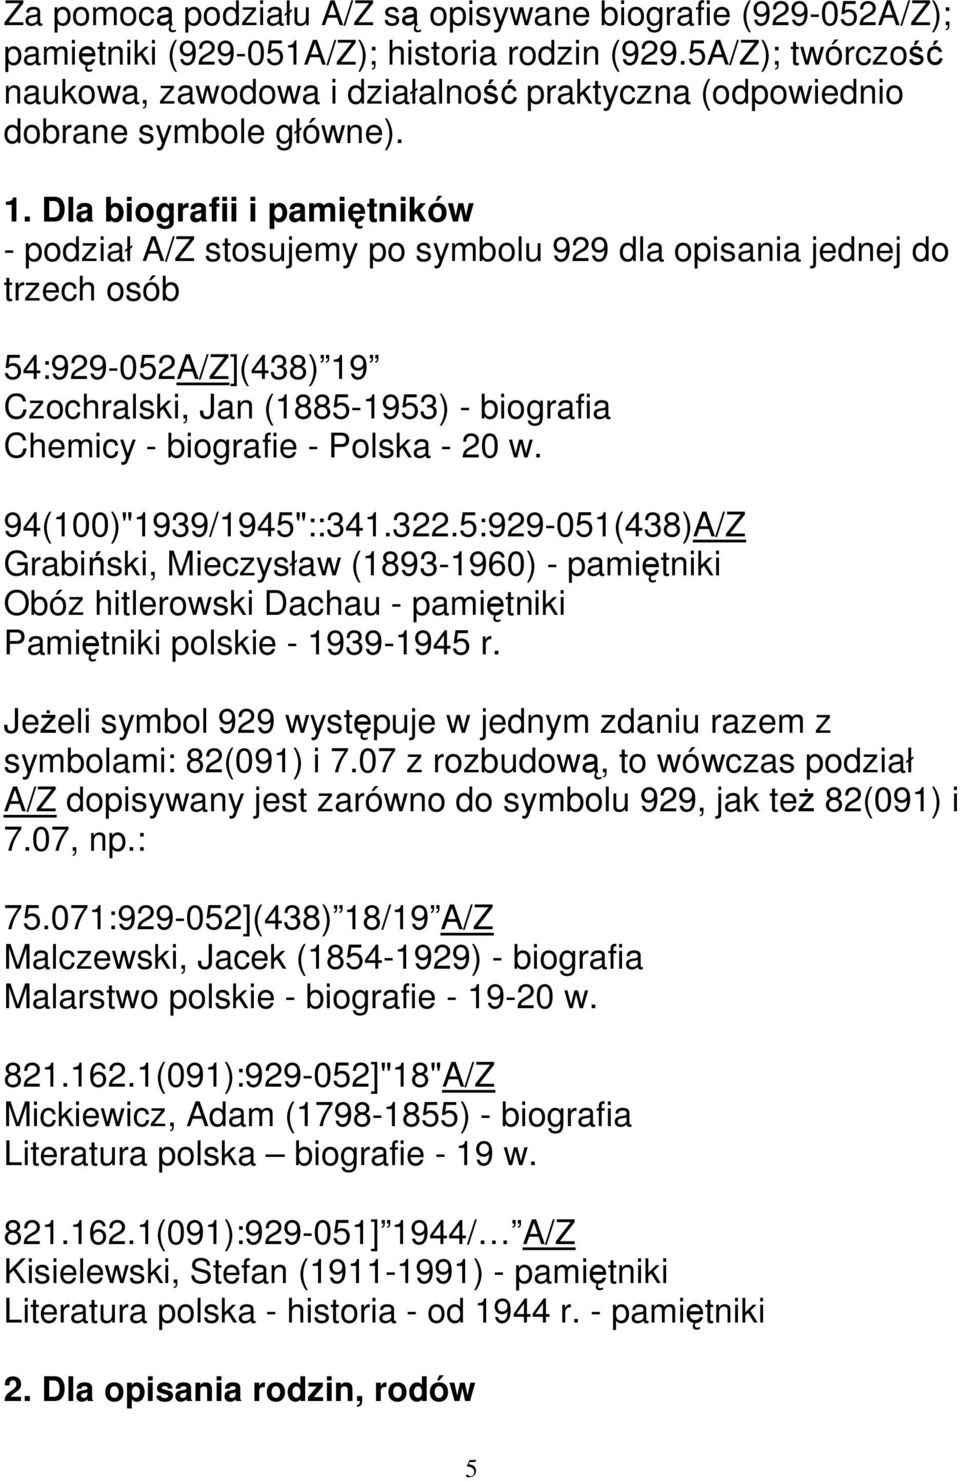 Dla biografii i pamiętników - podział A/Z stosujemy po symbolu 929 dla opisania jednej do trzech osób 54:929-052A/Z](438) 19 Czochralski, Jan (1885-1953) - biografia Chemicy - biografie - Polska - 20